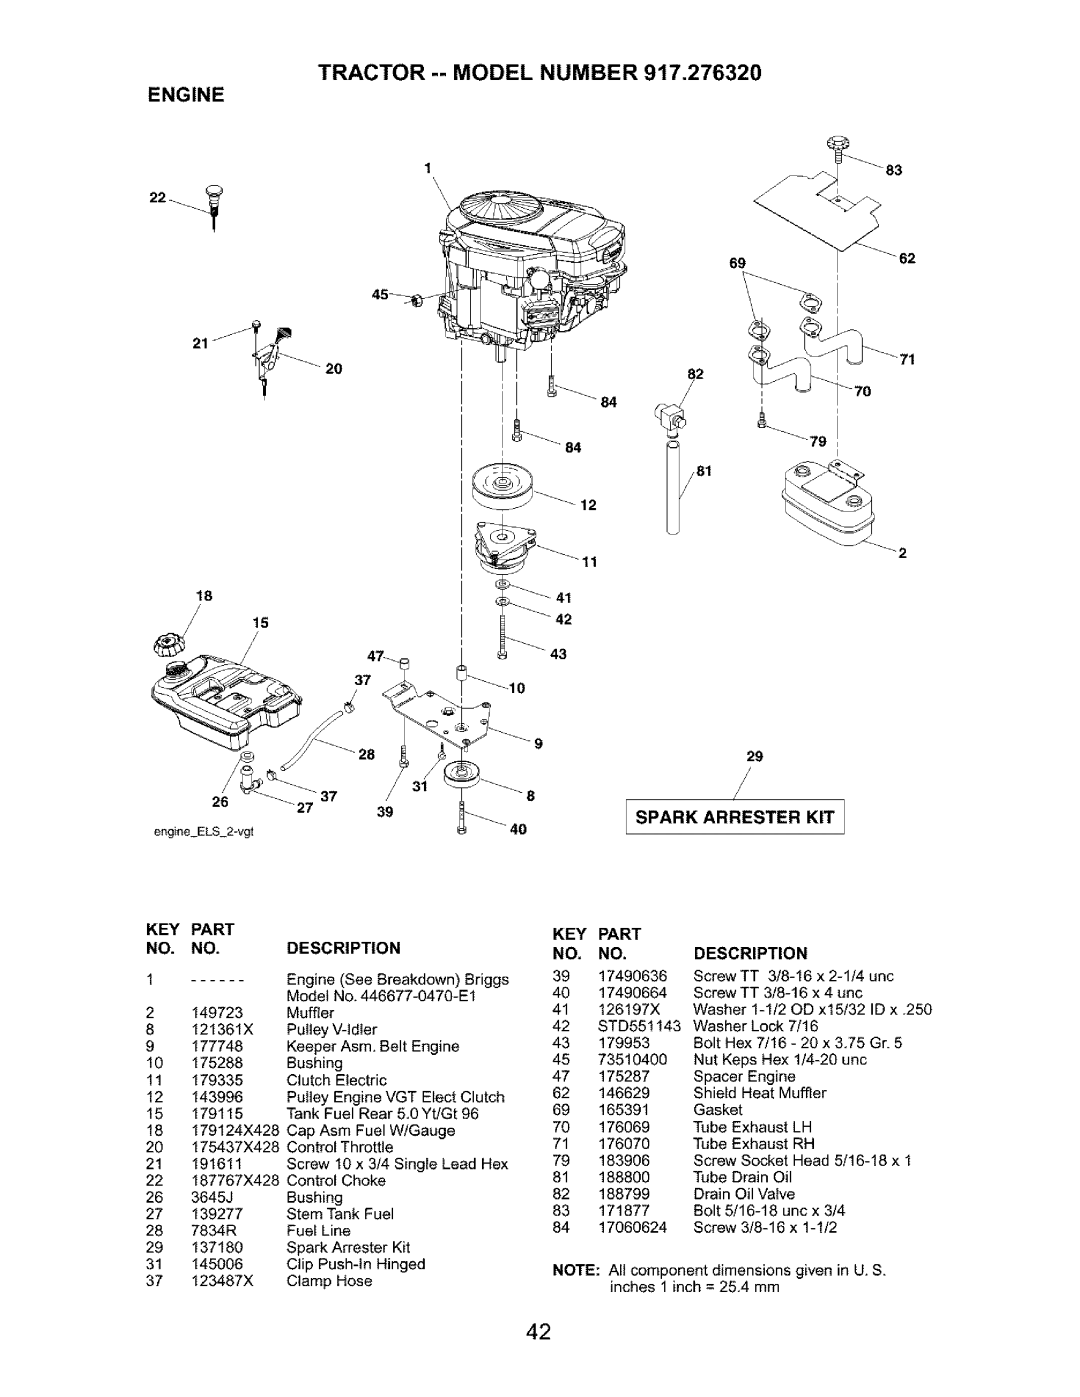 Craftsman 917.27632 owner manual Isparkark,T.I St, Tractor --Model Number Engine 